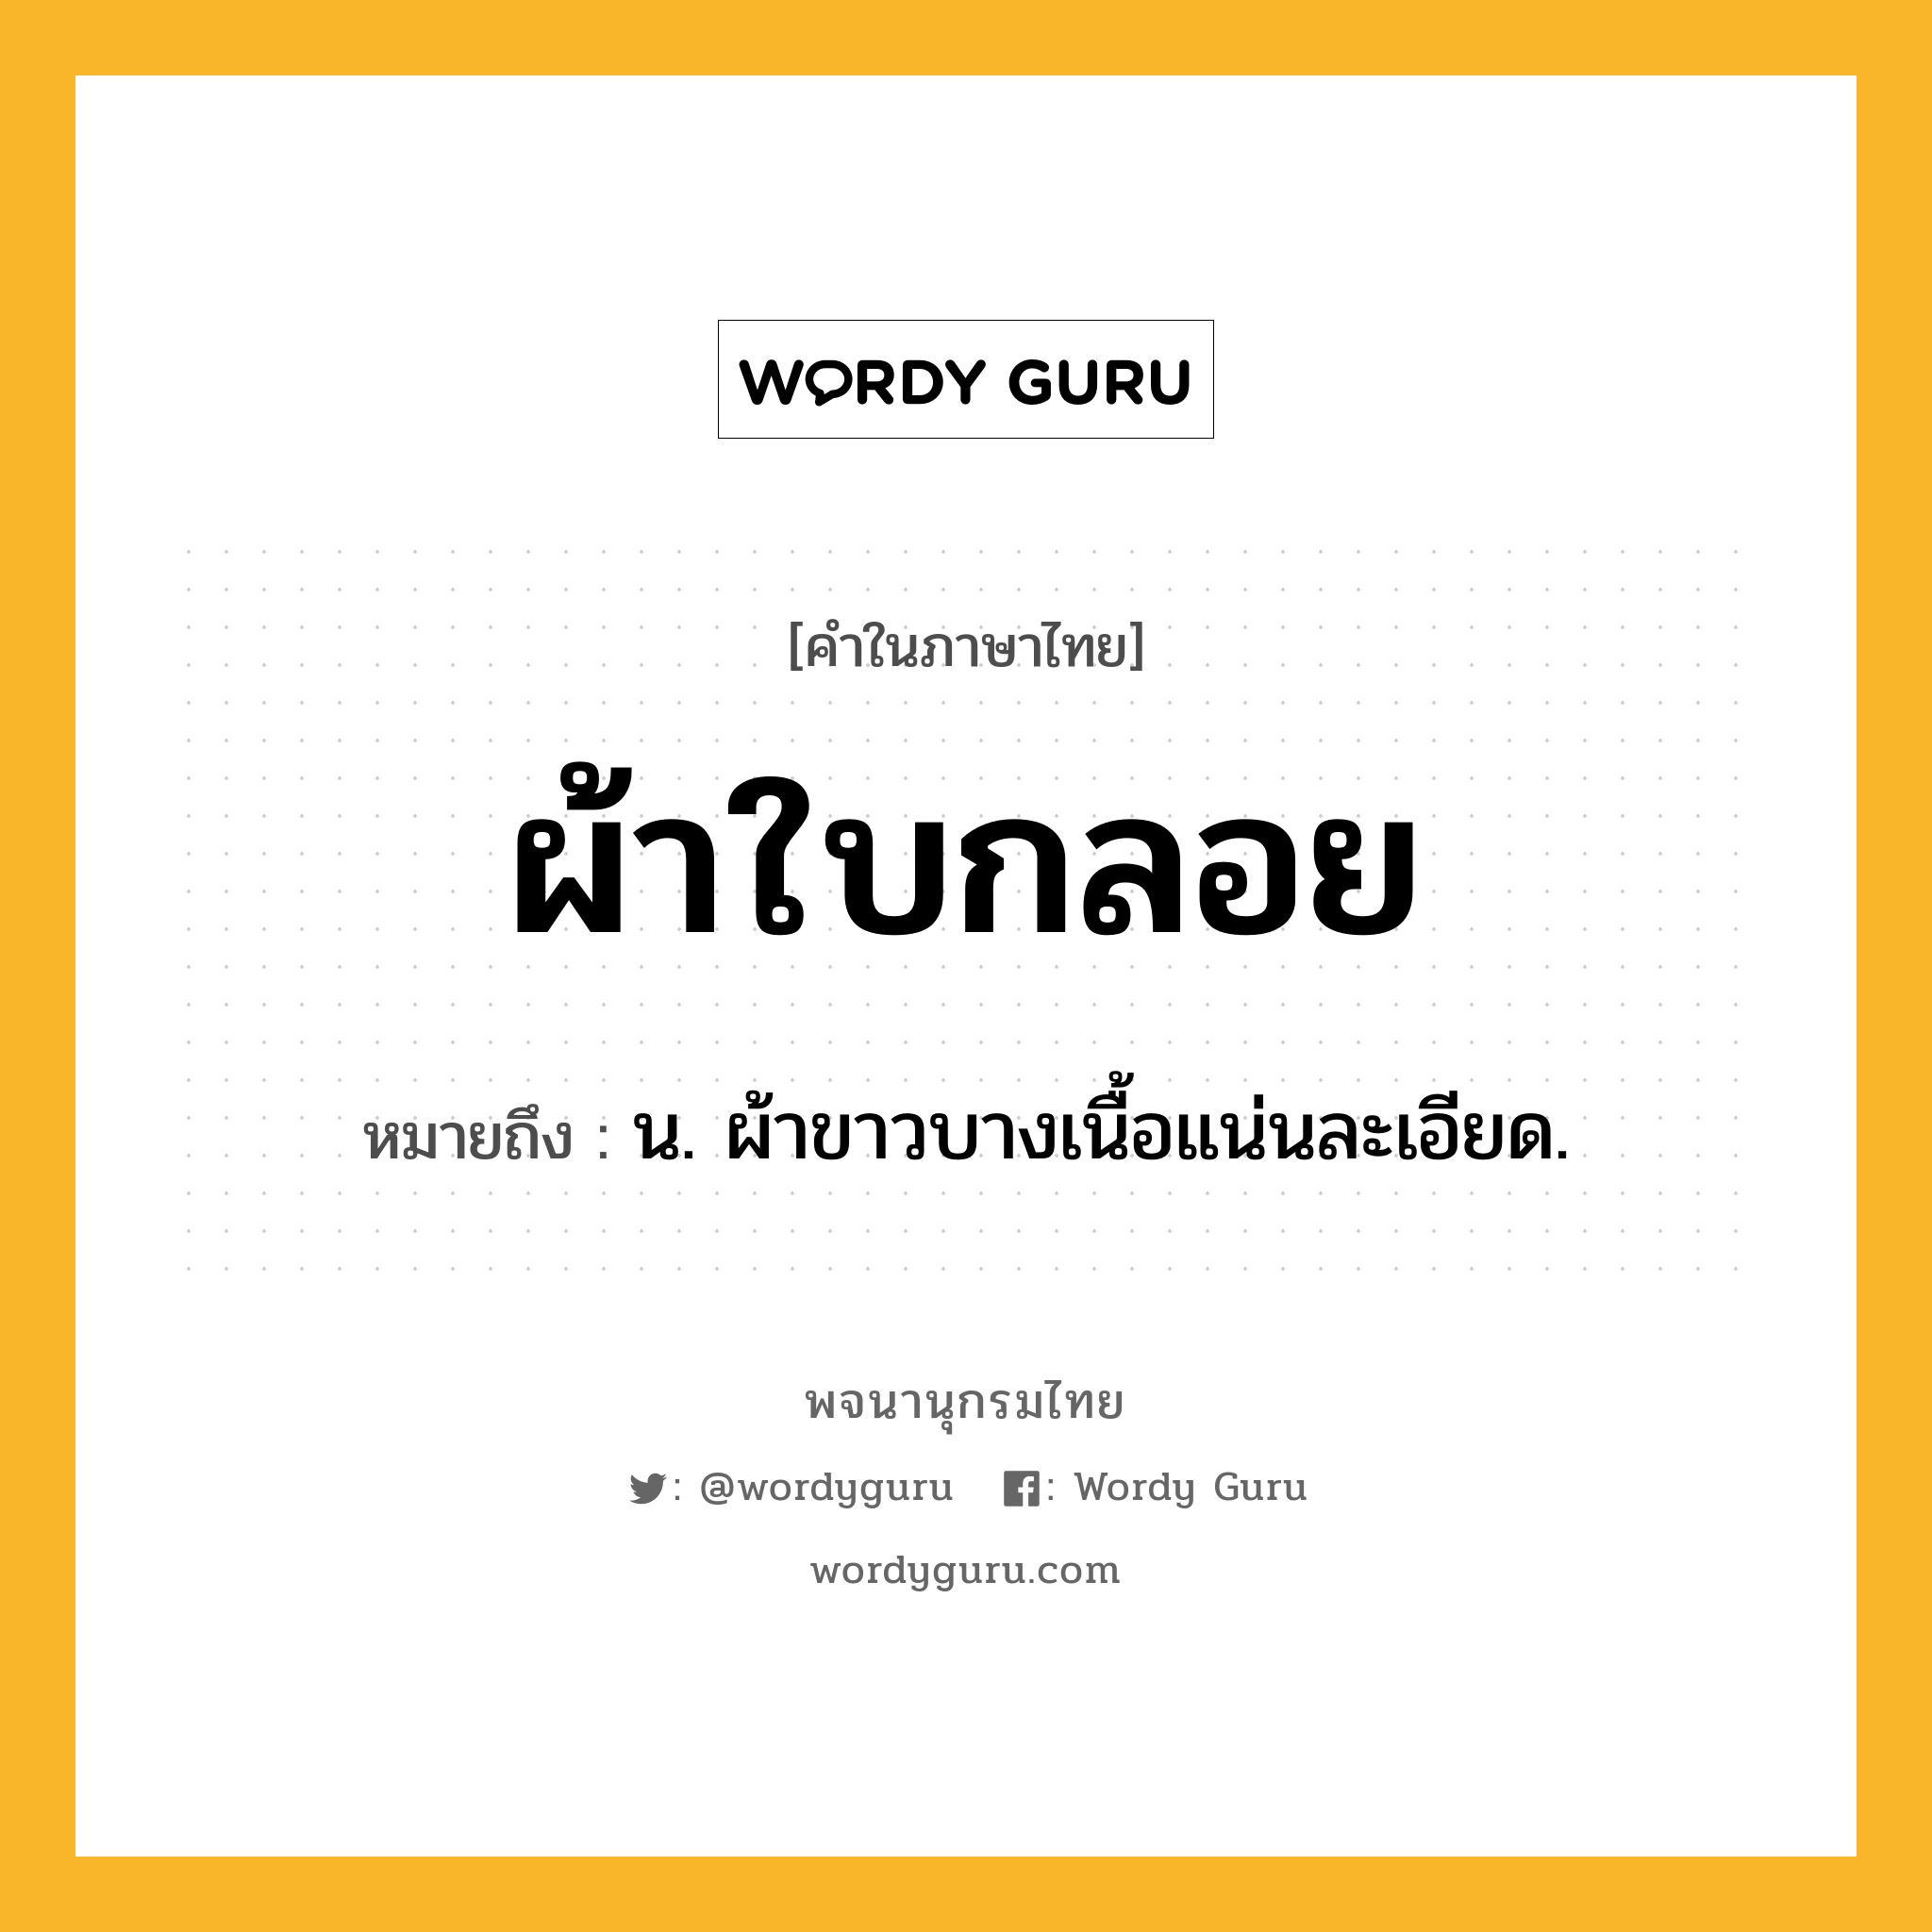 ผ้าใบกลอย หมายถึงอะไร?, คำในภาษาไทย ผ้าใบกลอย หมายถึง น. ผ้าขาวบางเนื้อแน่นละเอียด.